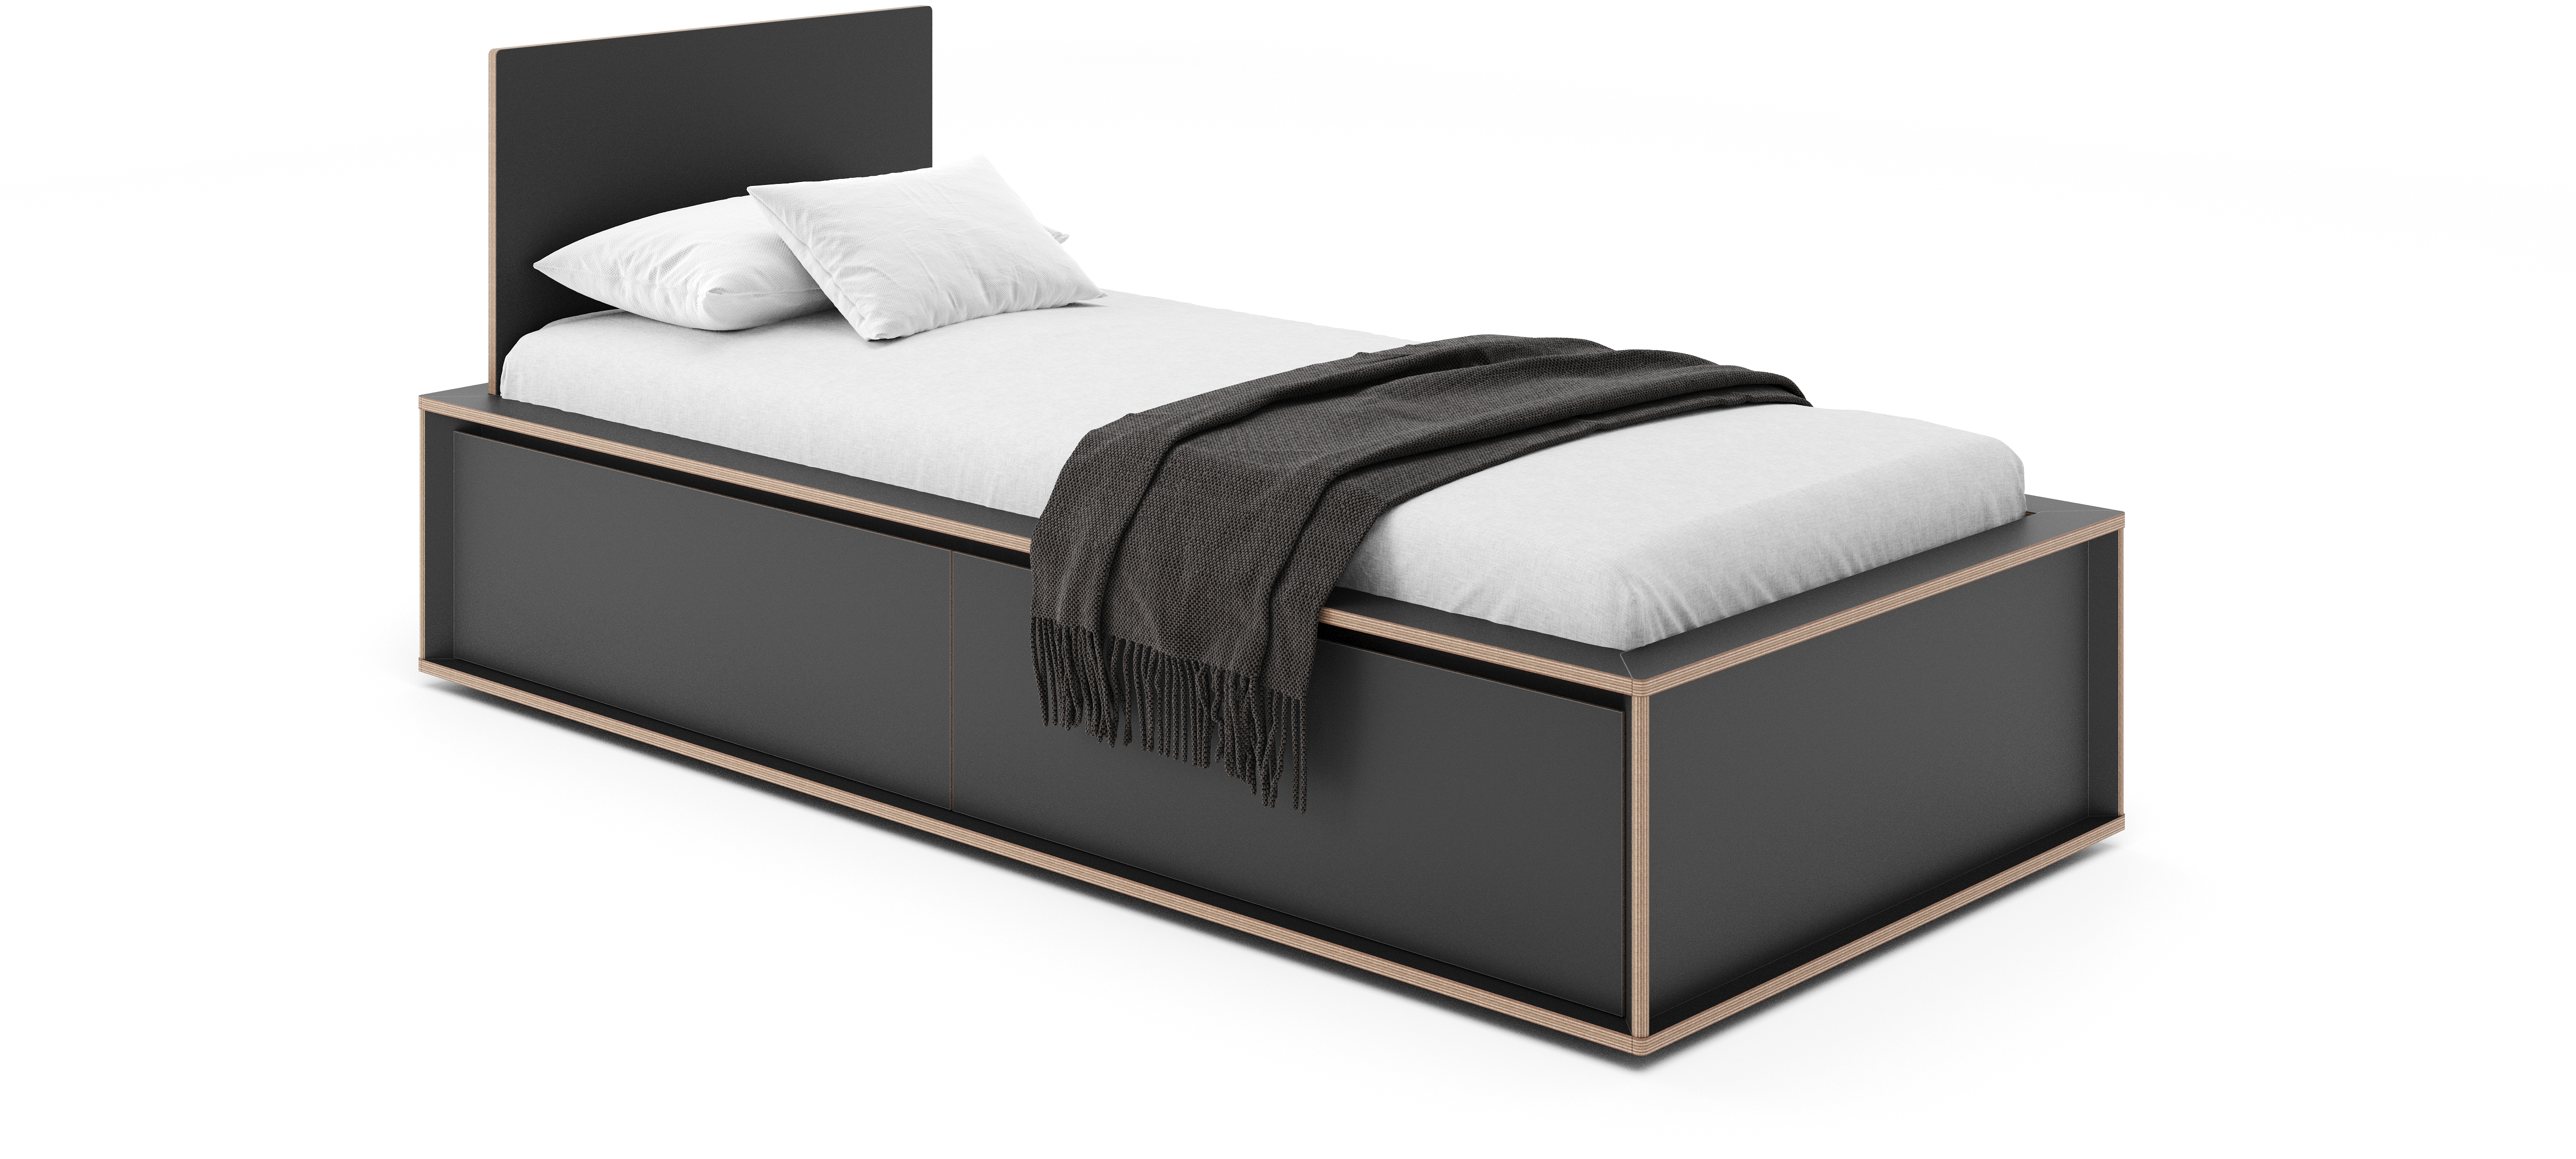 SPAZE Bett mit Kopfteil - KAQTU Design